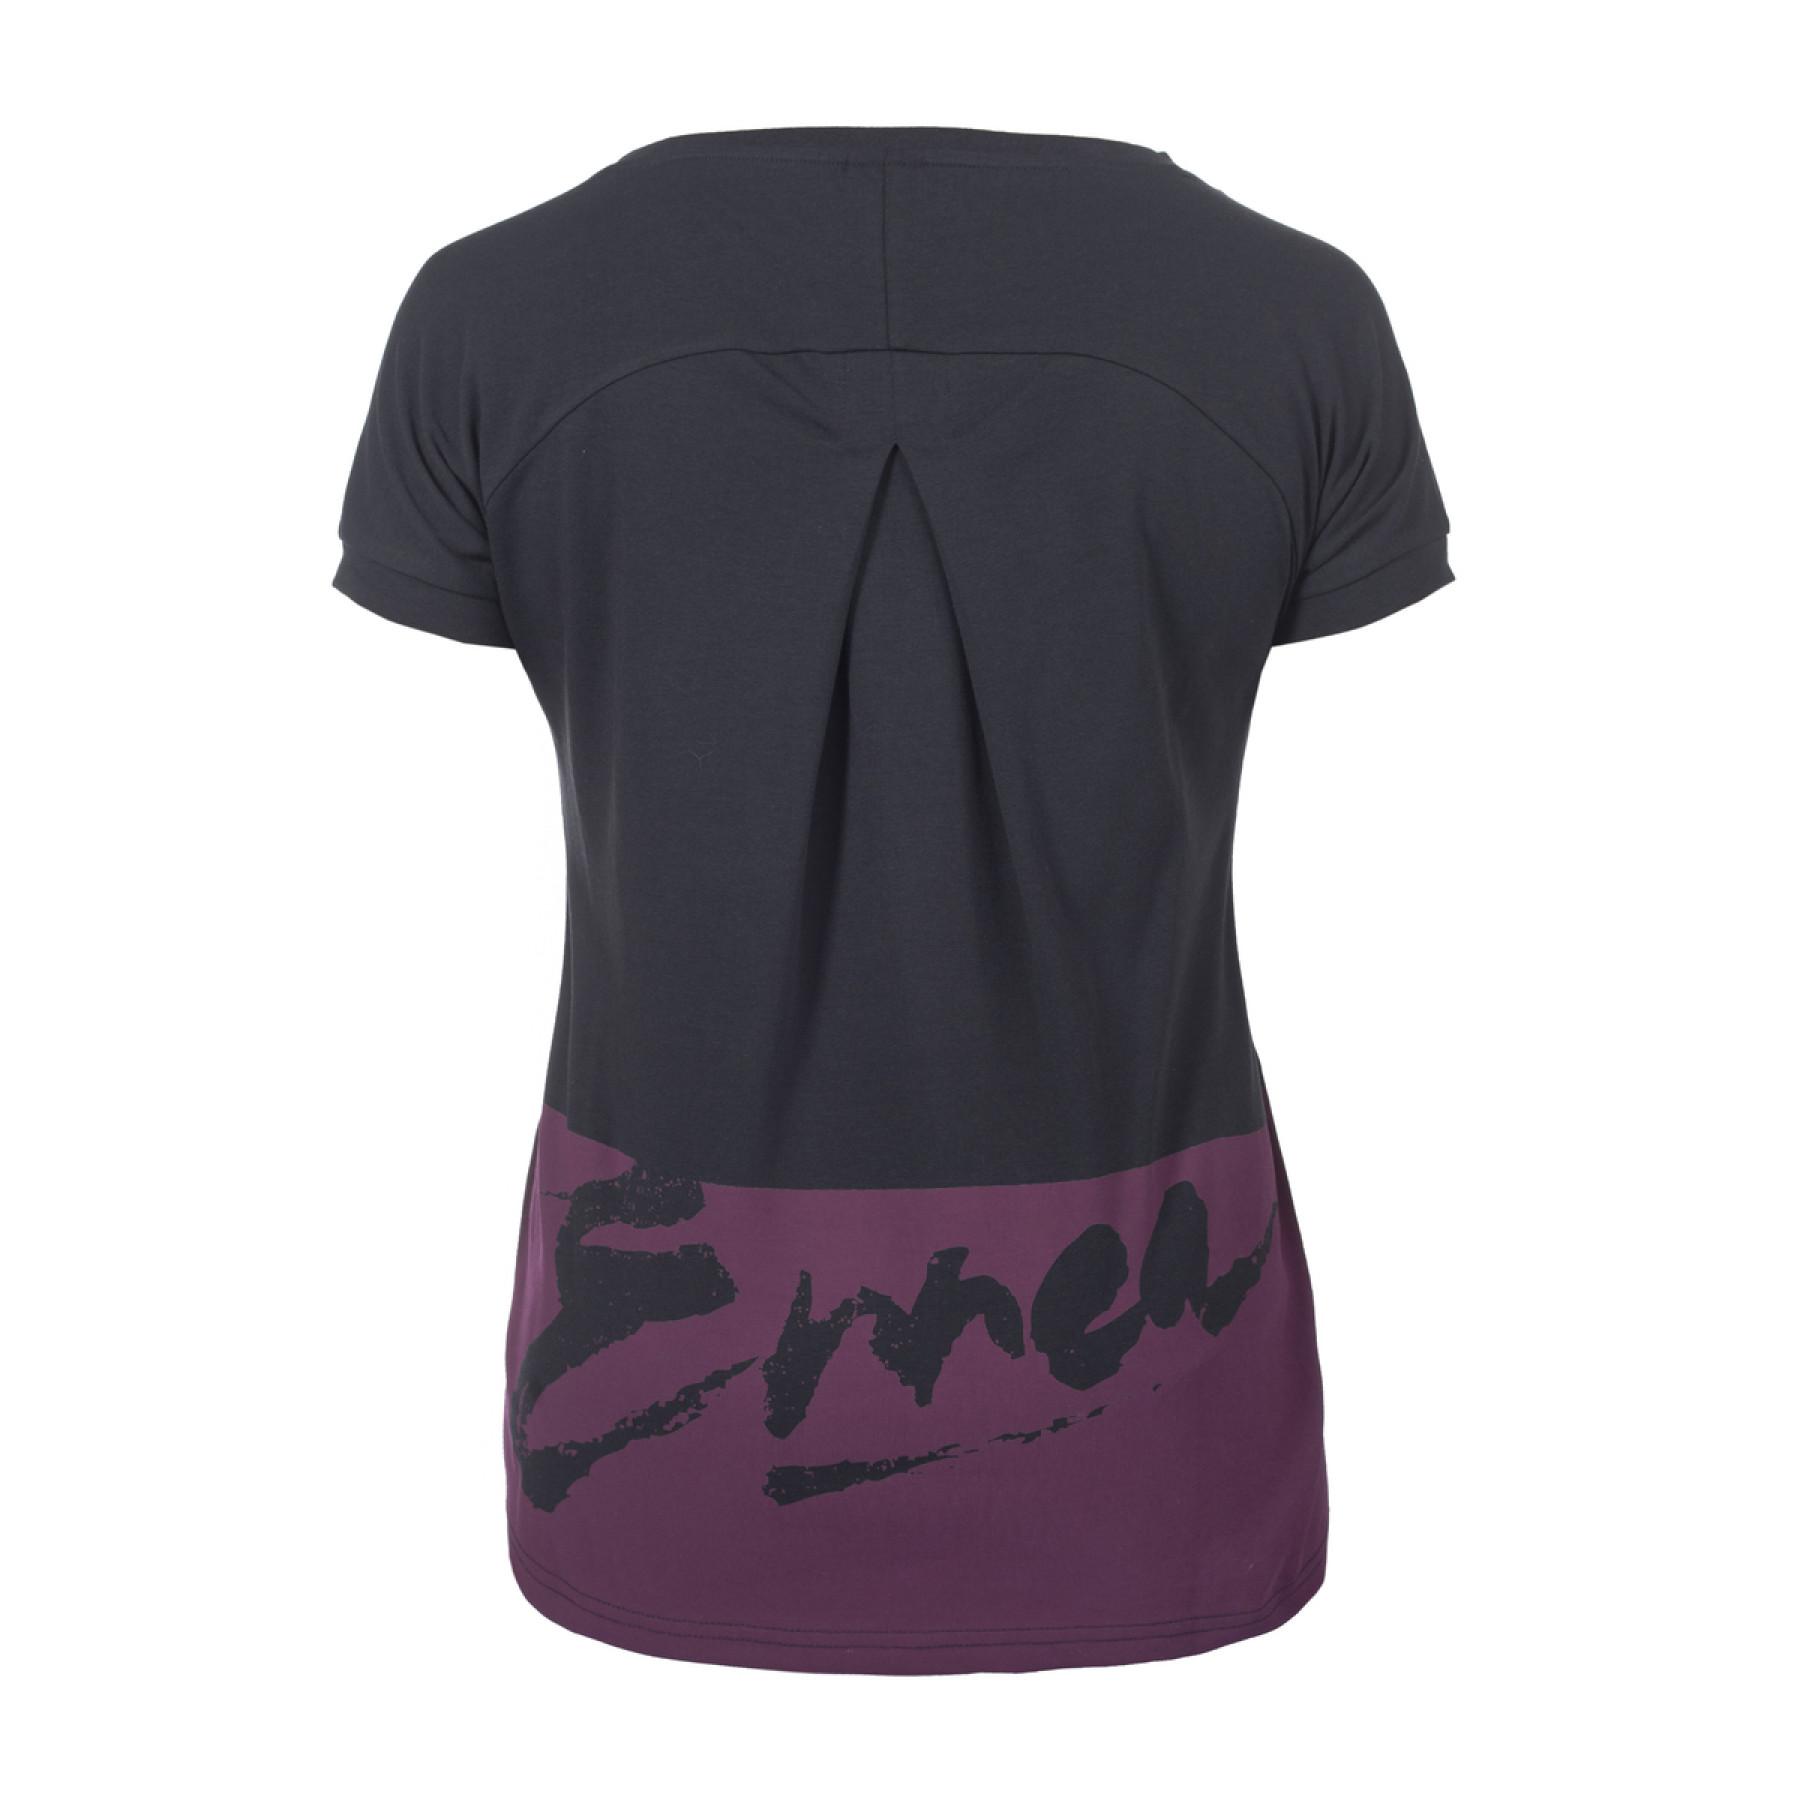 T-shirt femme Errea rhetta